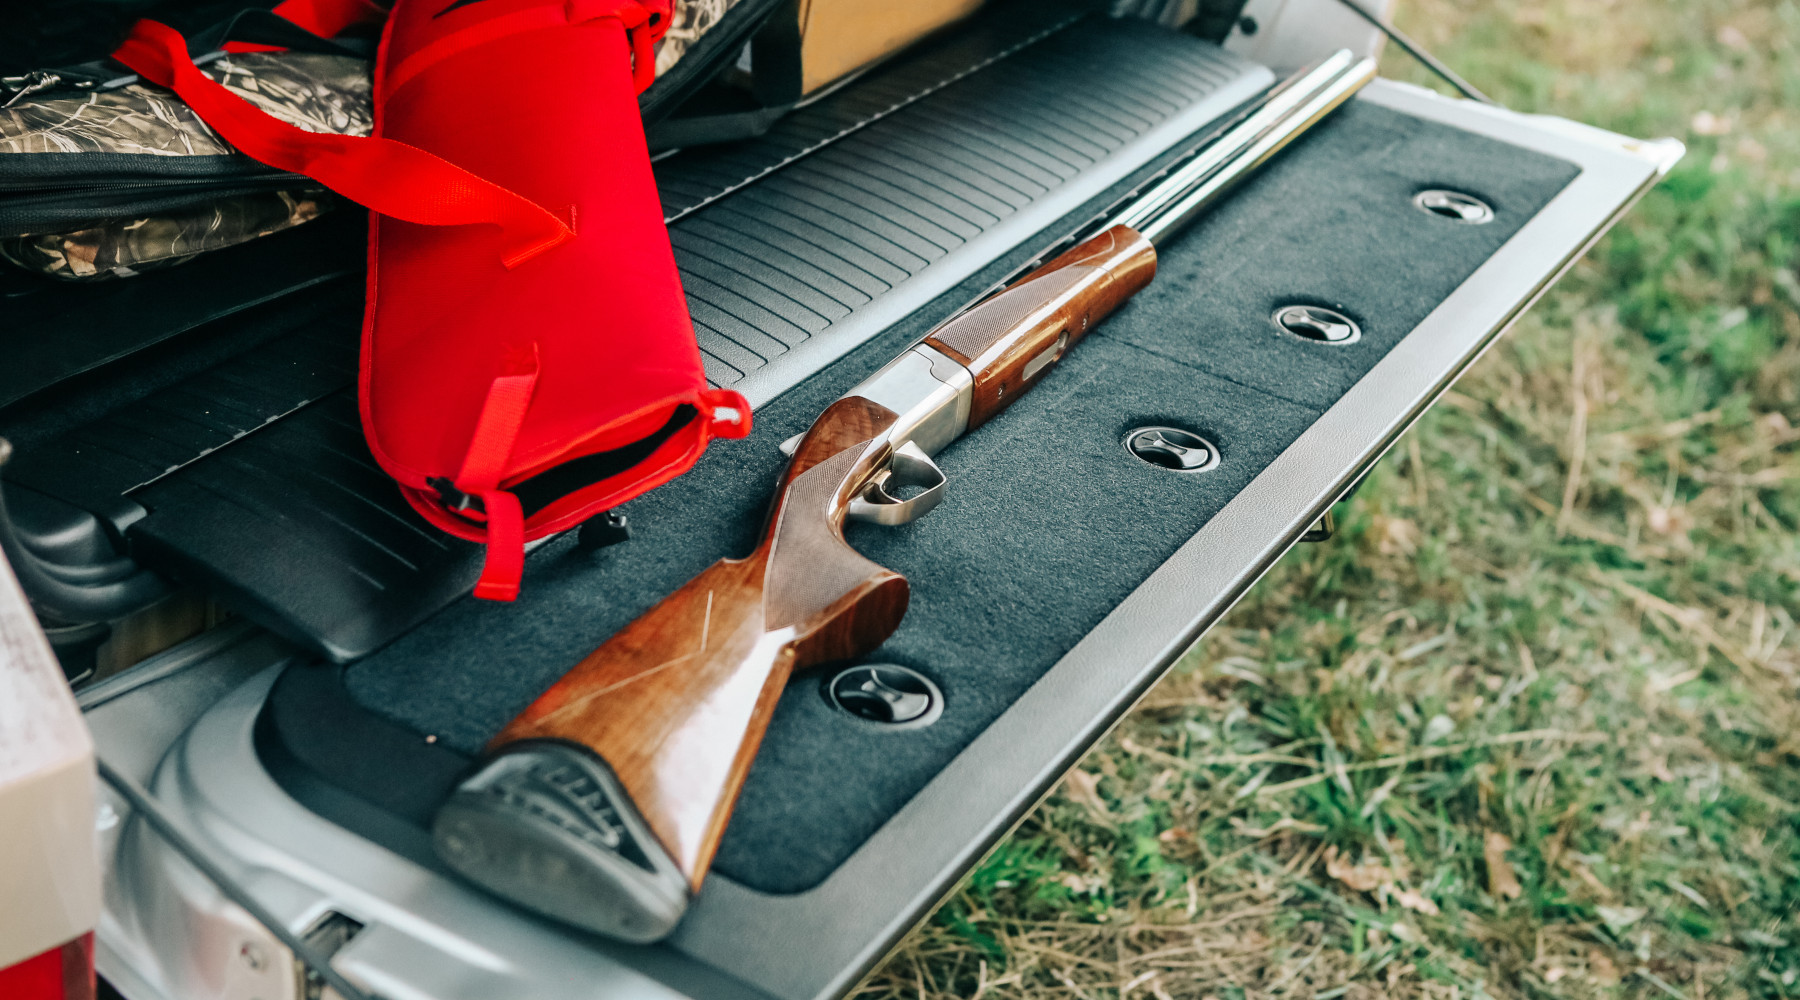 Rinnovo del porto di fucile dopo furto in auto, la sentenza: fucile da caccia appoggiato nel bagagliaio di un'automobile